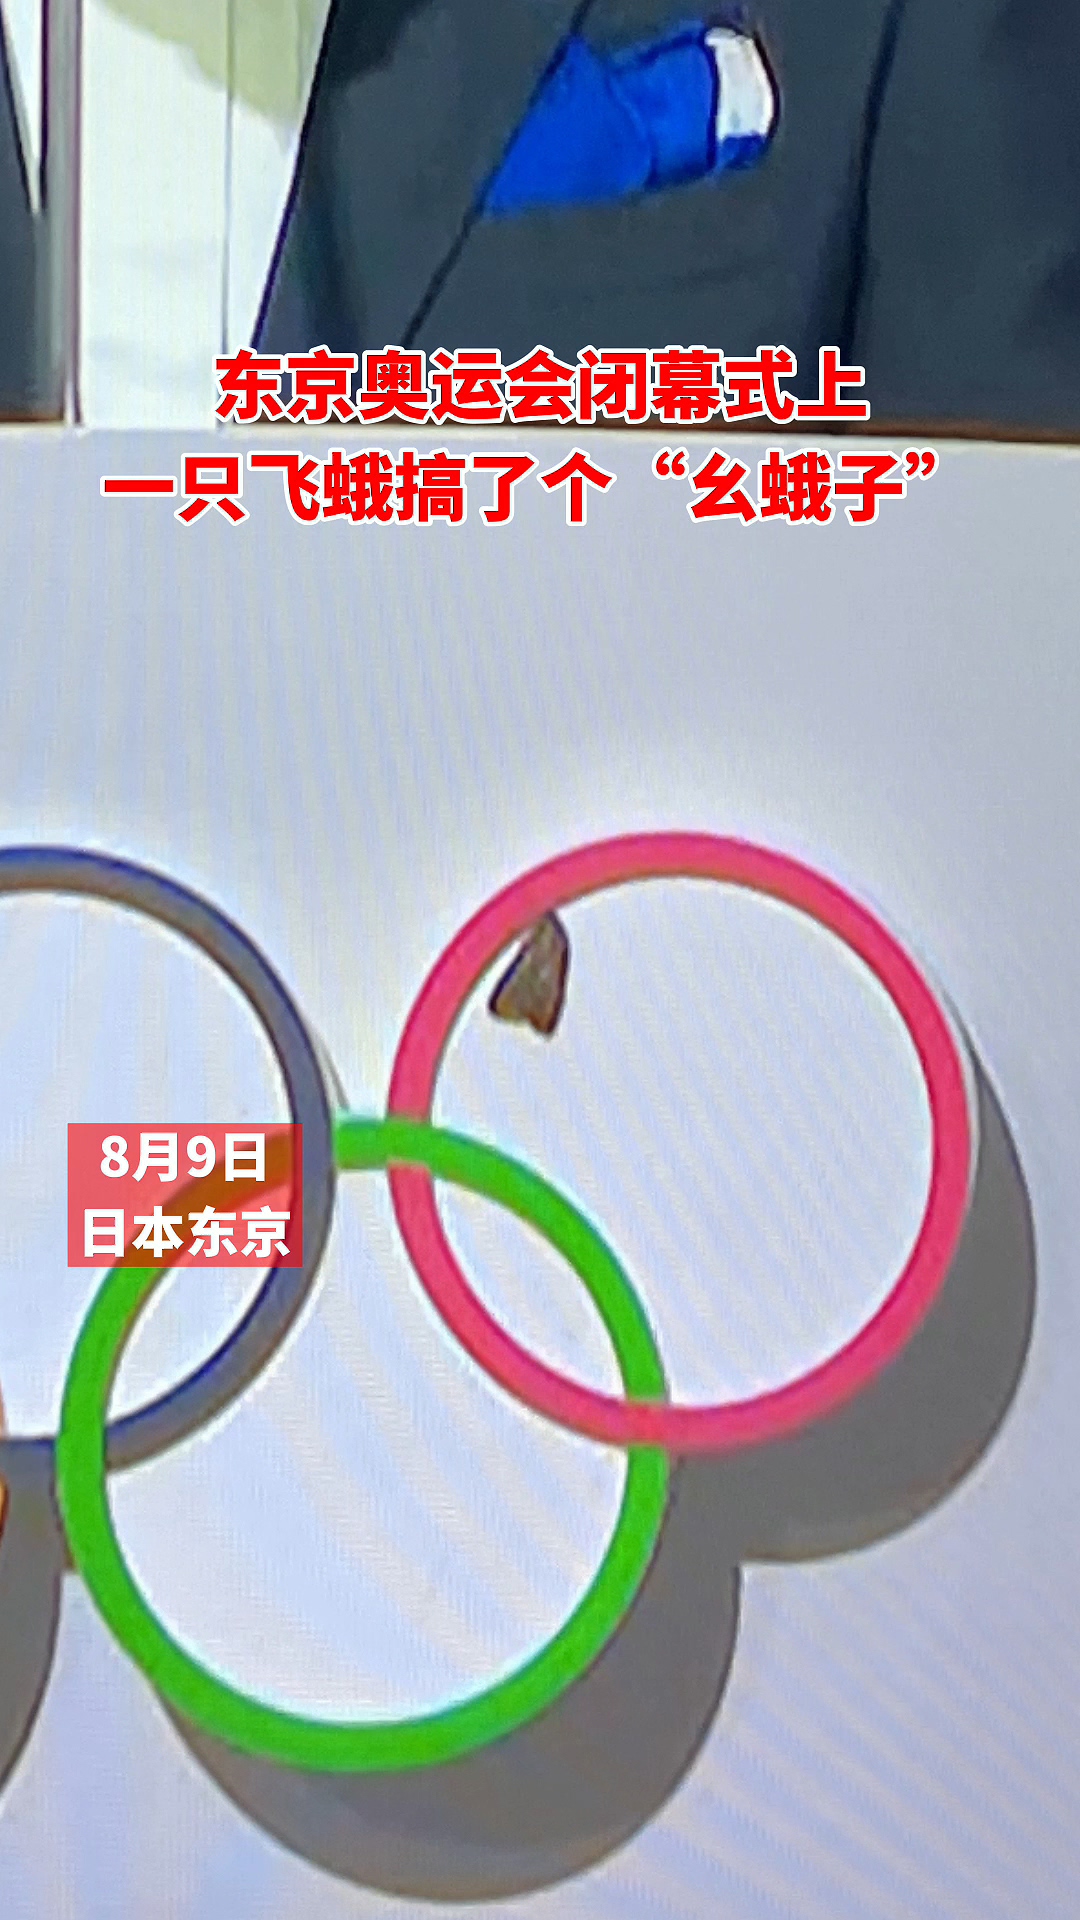 东京奥运会闭幕式上 一只飞蛾搞了个“幺蛾子”